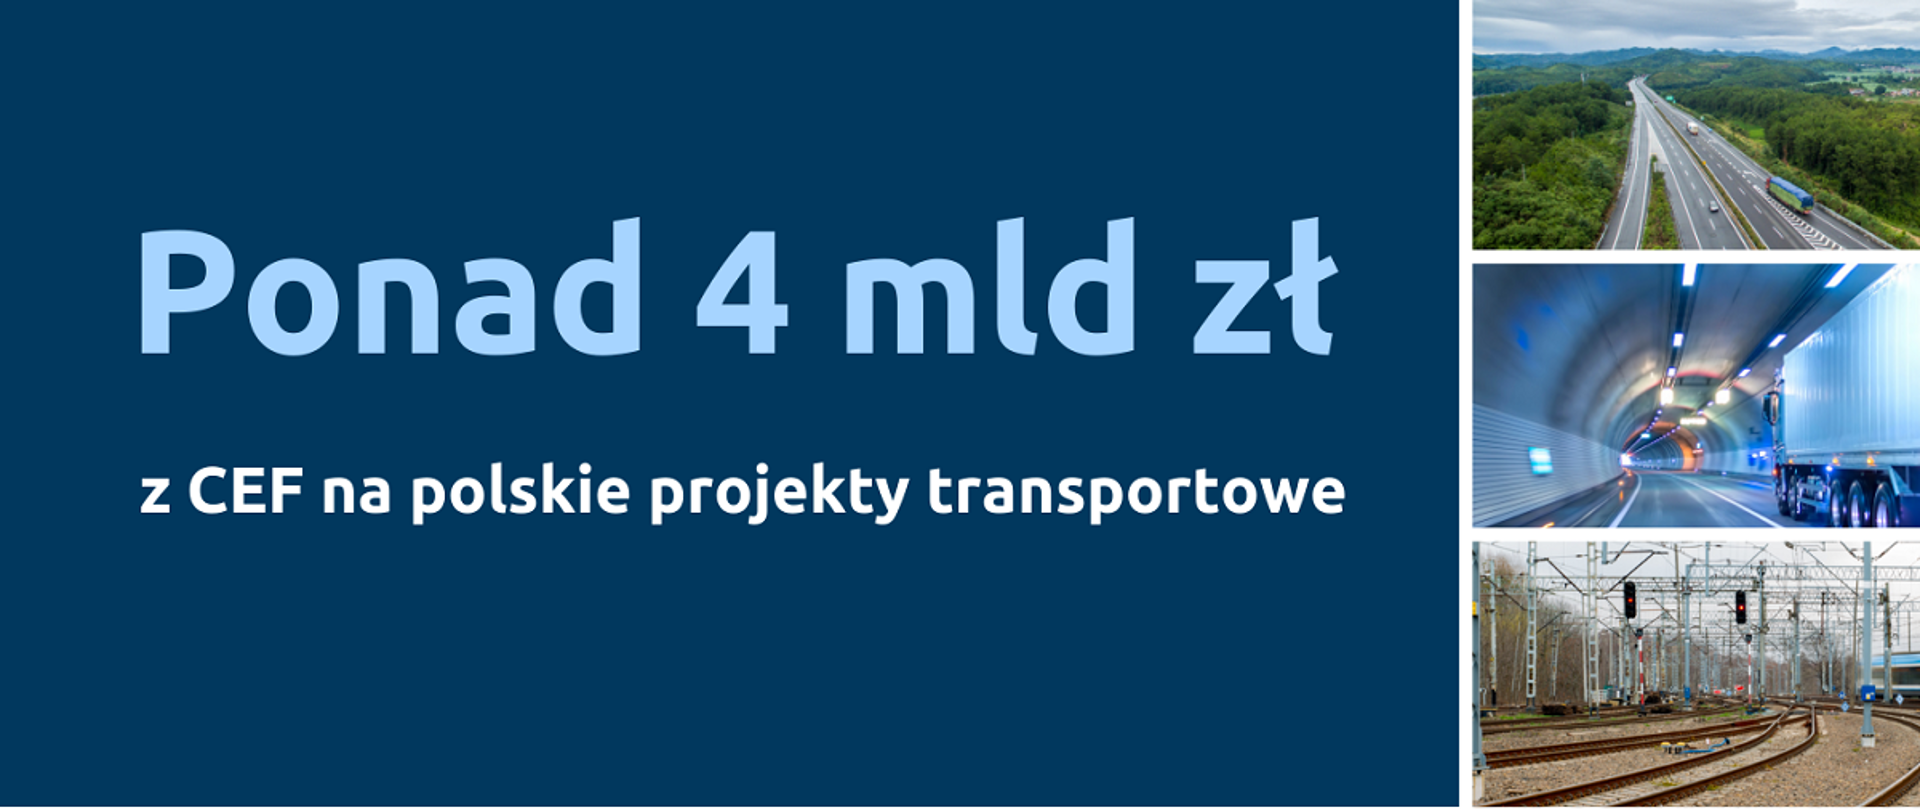 Grafika z napisem informującym o tym, że Polska otrzyma ponad 4 mld zł z CEF na polskie projekty transportowe, po prawej trzy zdjęcia przedstawiające autostradę, tunel drogowy i tory kolejowe